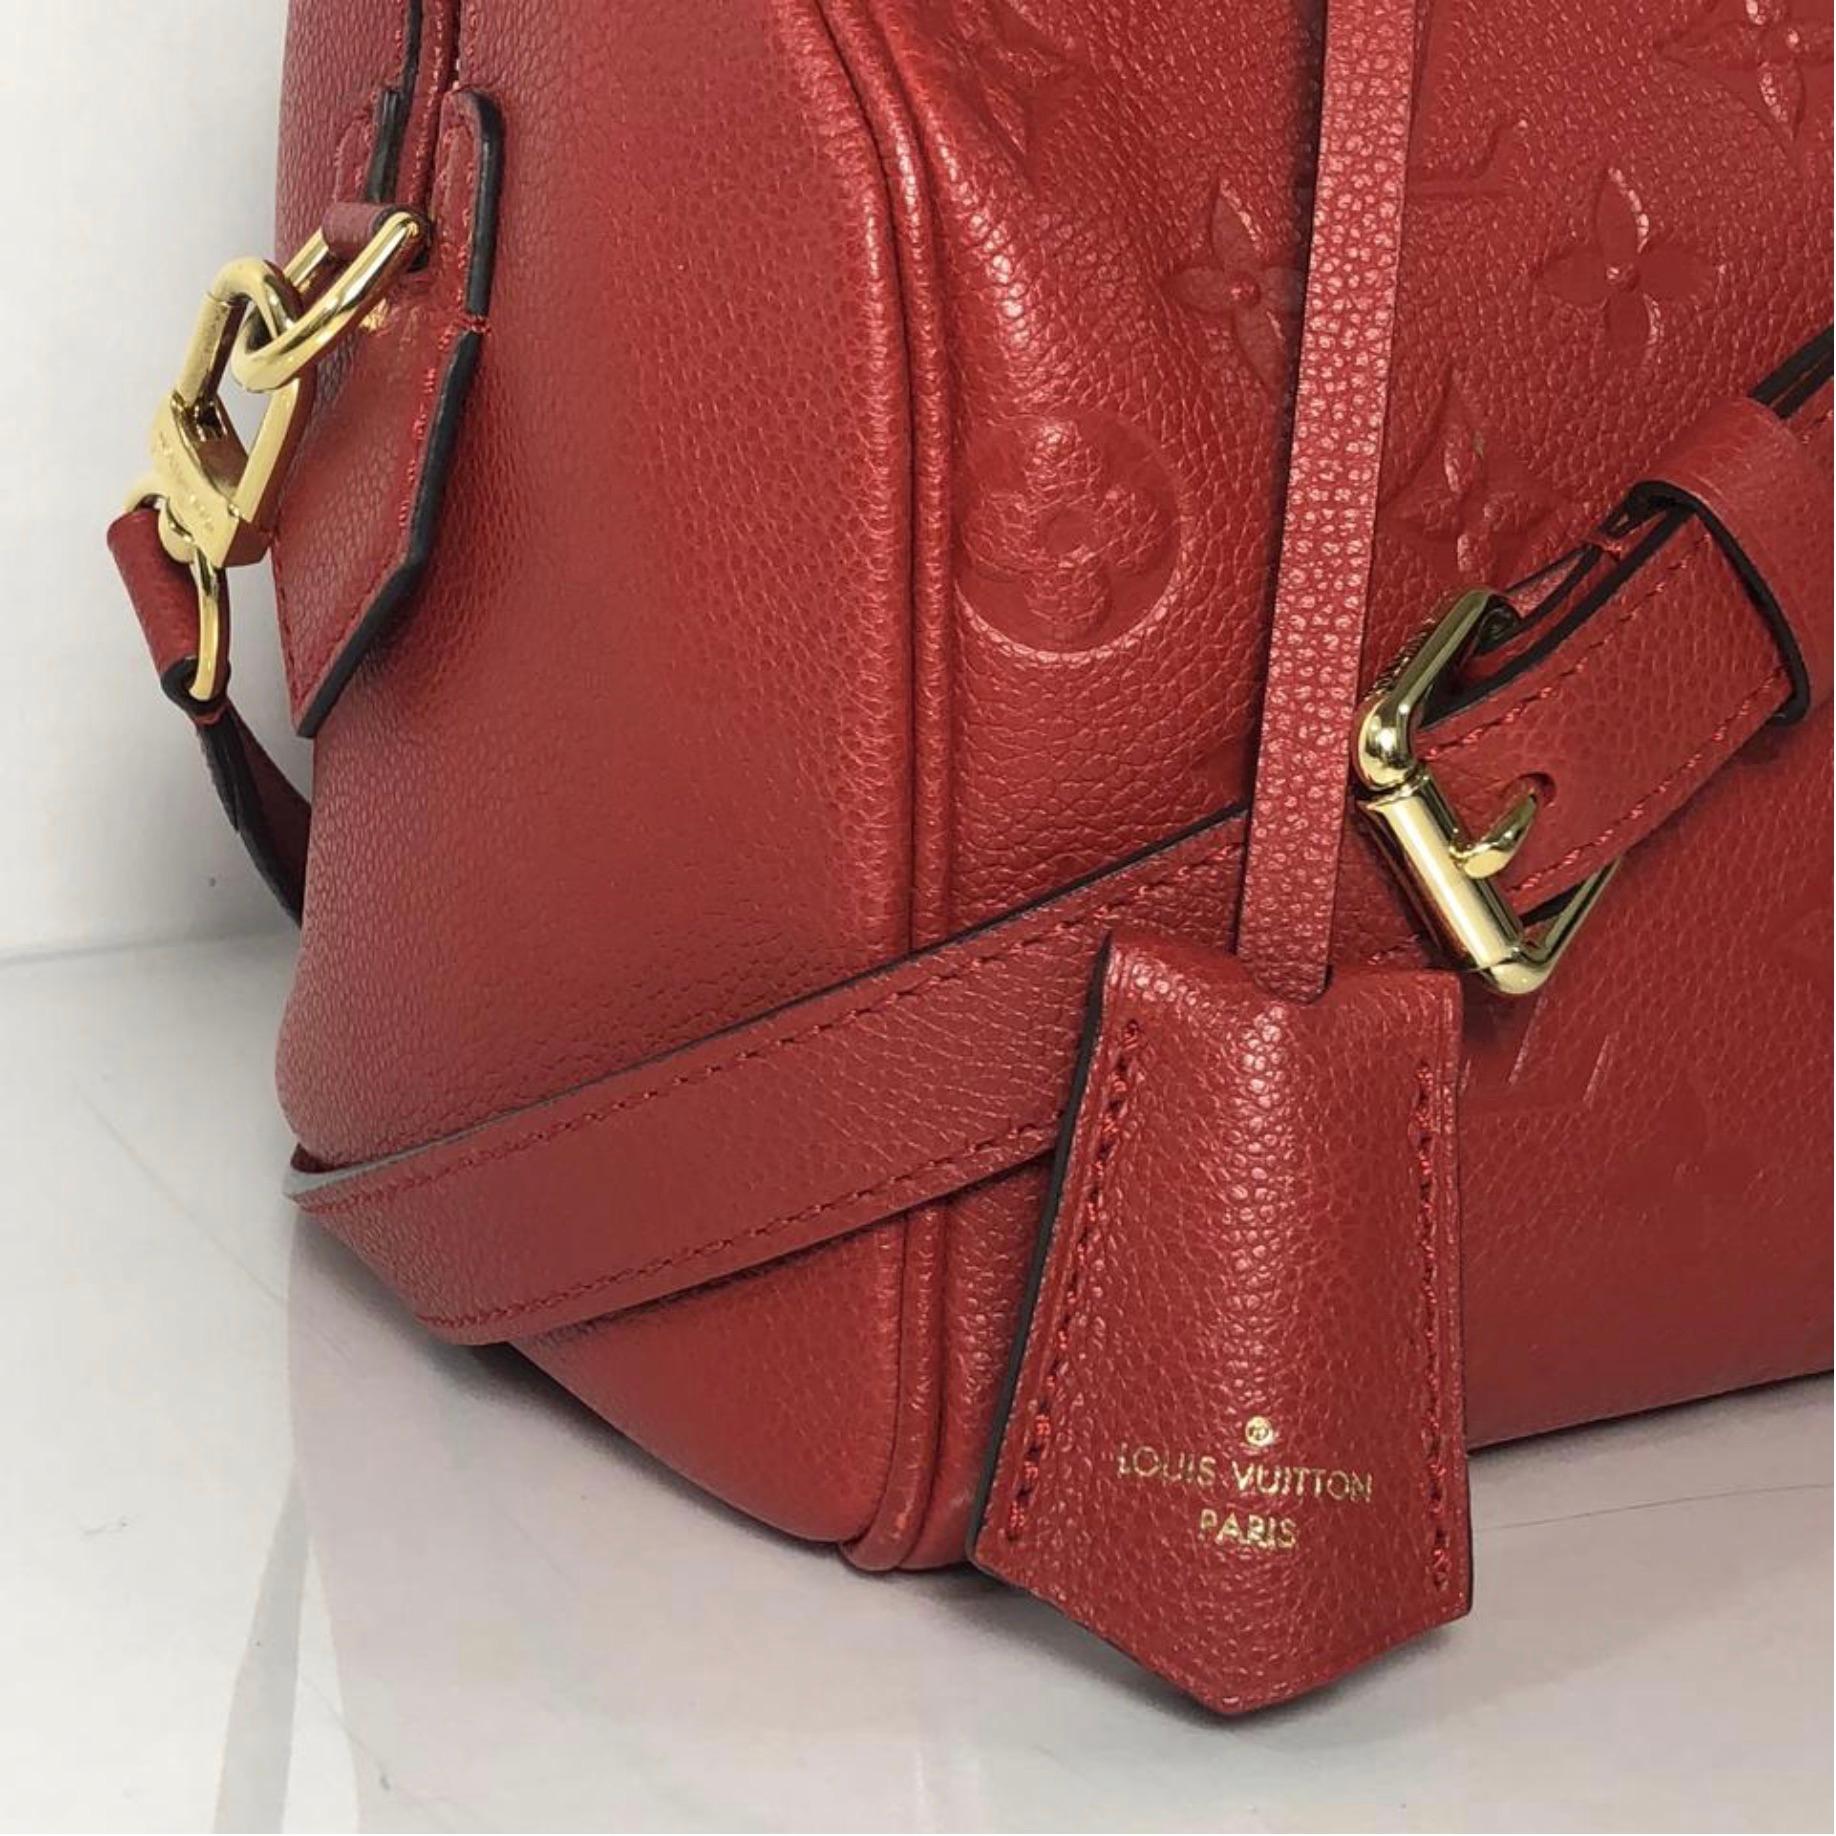 Brown Louis Vuitton Empreinte Speedy 25 in Red Satchel Handbag For Sale